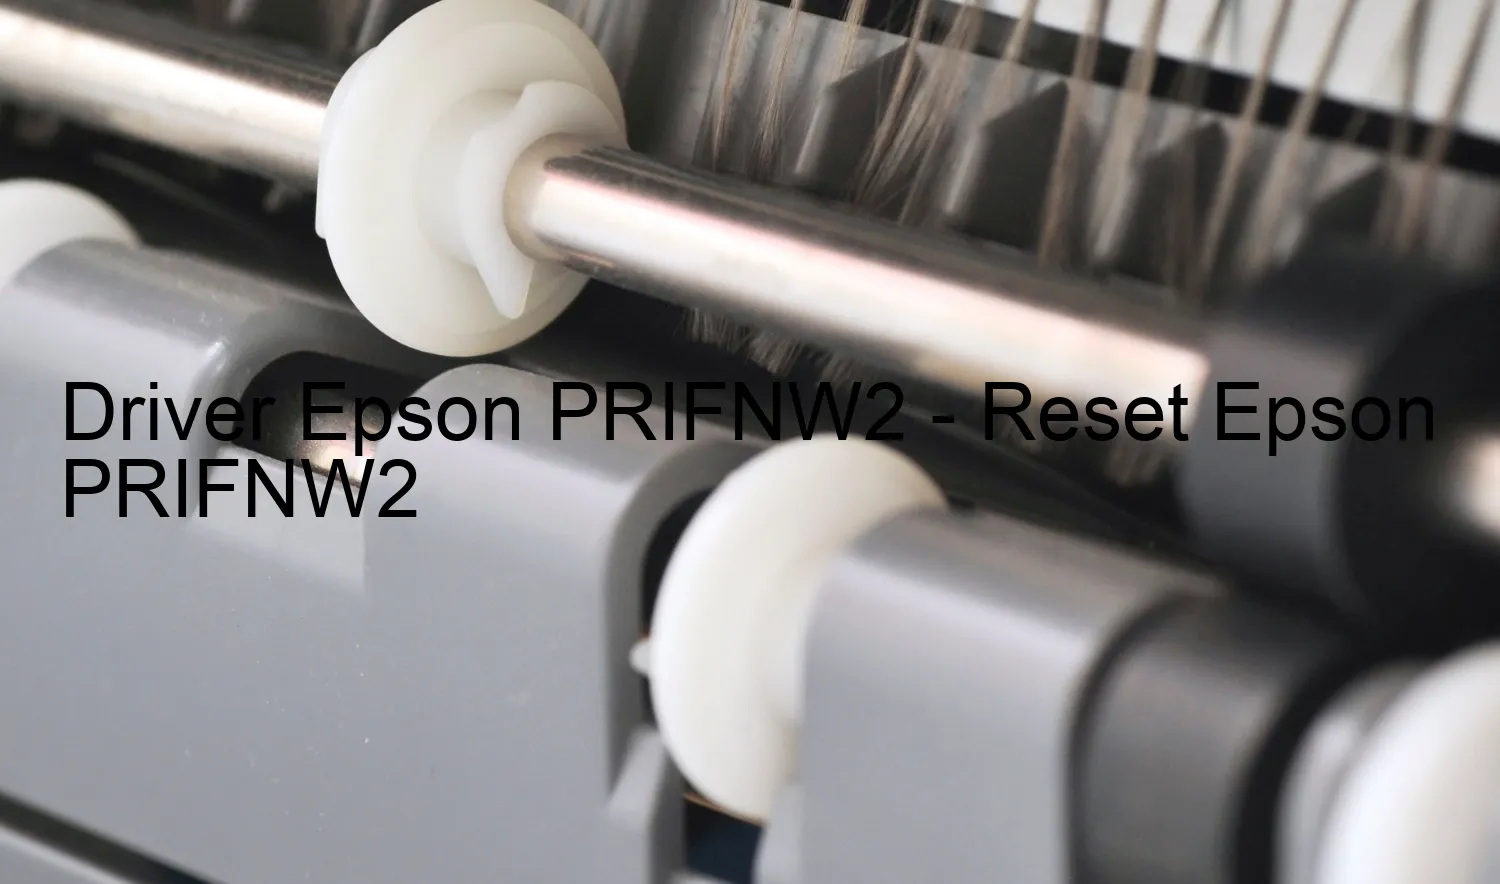 Epson PRIFNW2のドライバー、Epson PRIFNW2のリセットソフトウェア